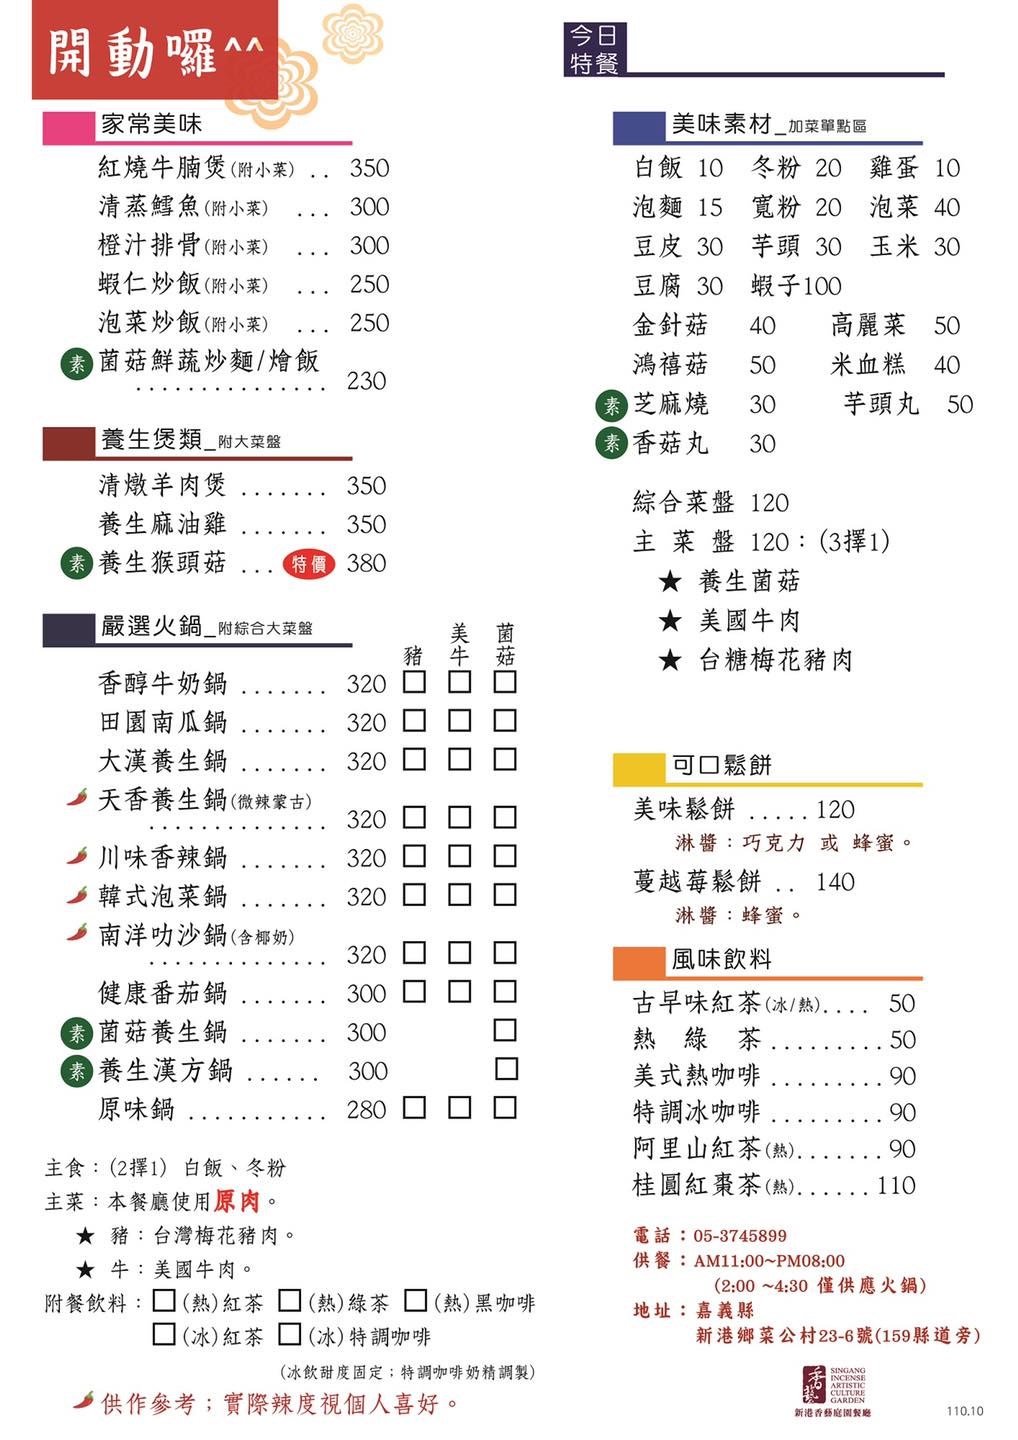 新港香藝庭園餐廳菜單